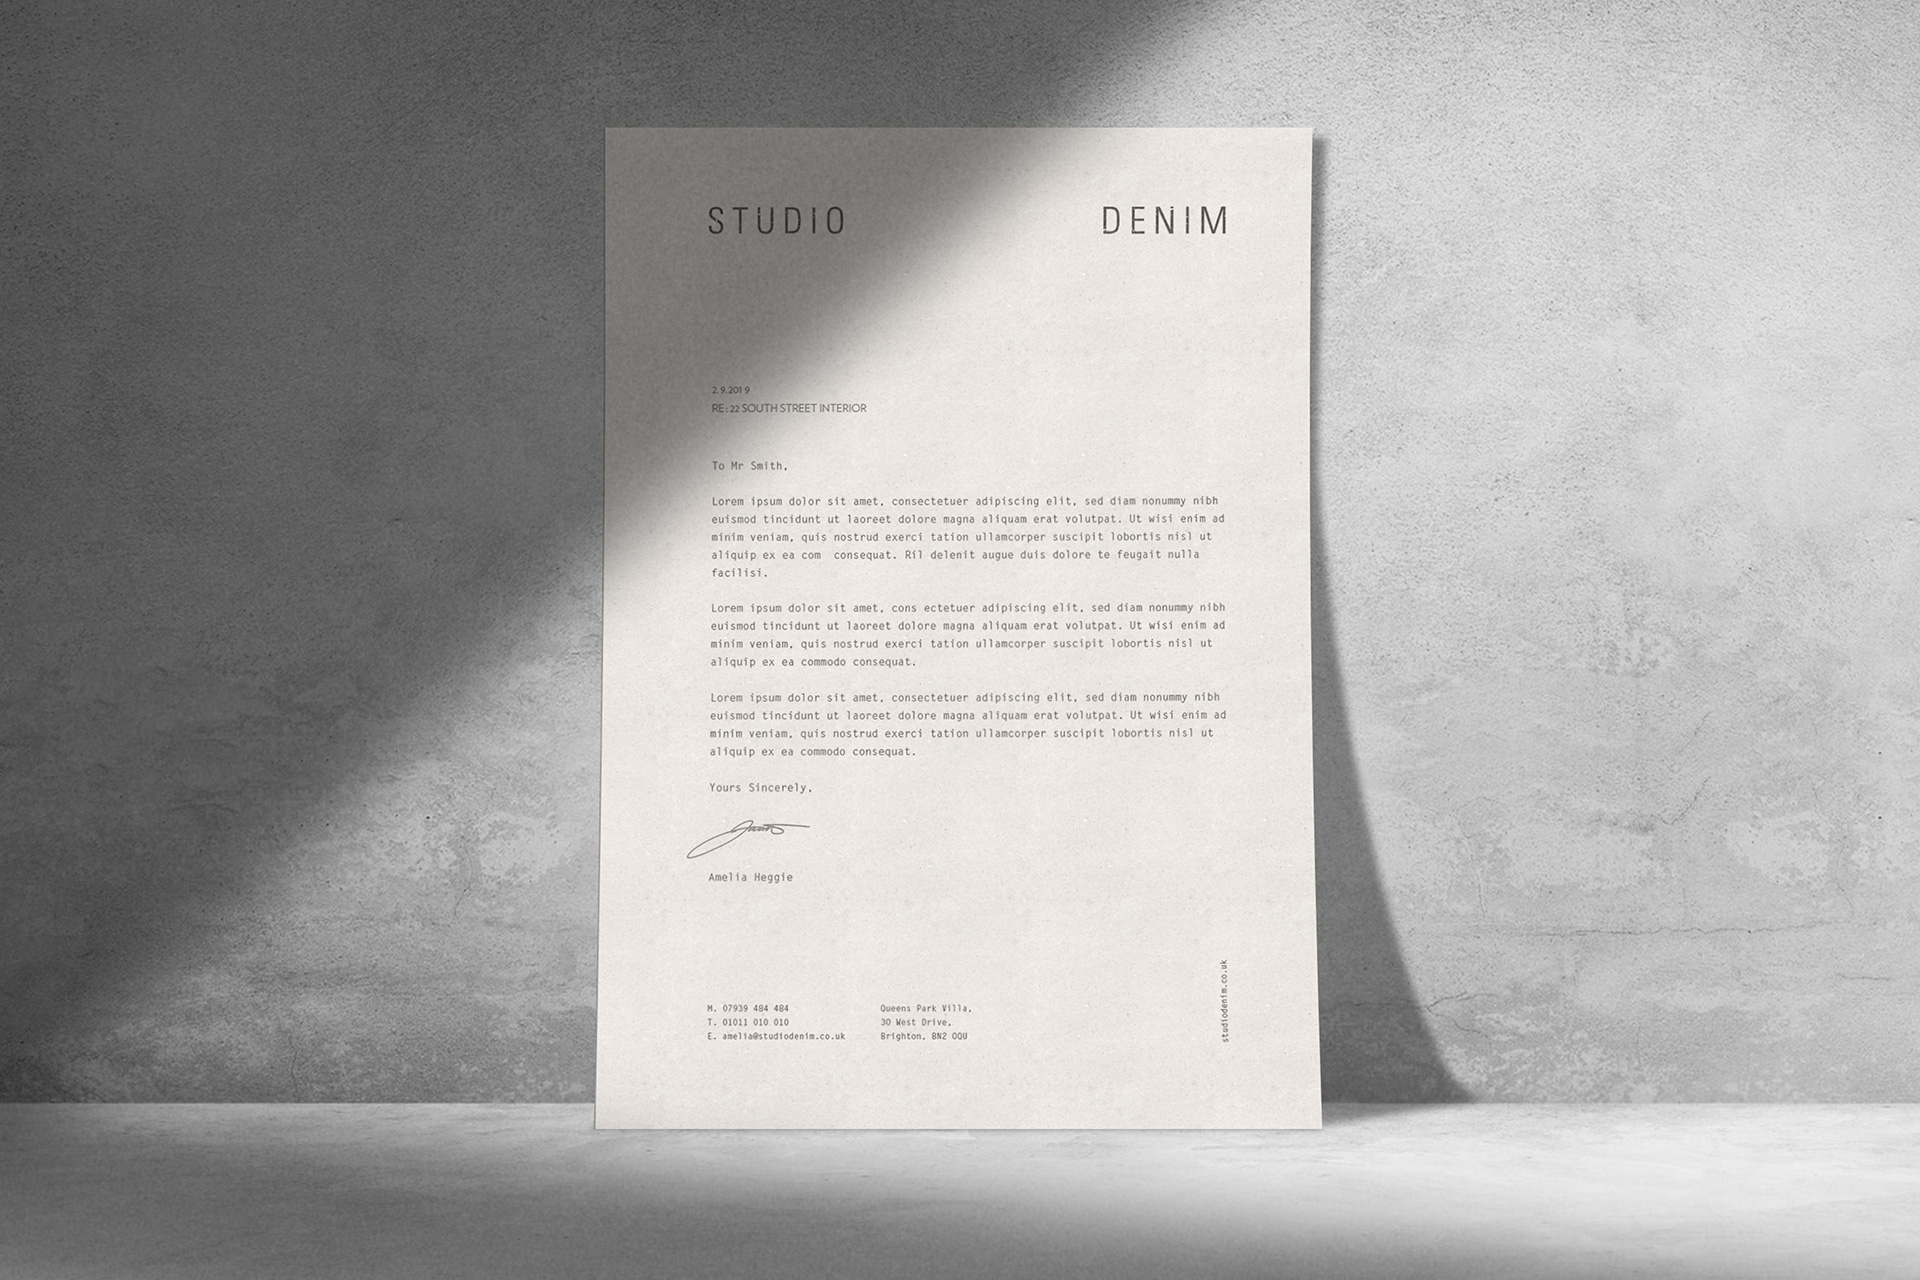 室内设计工作室Studio Denim品牌视觉设计